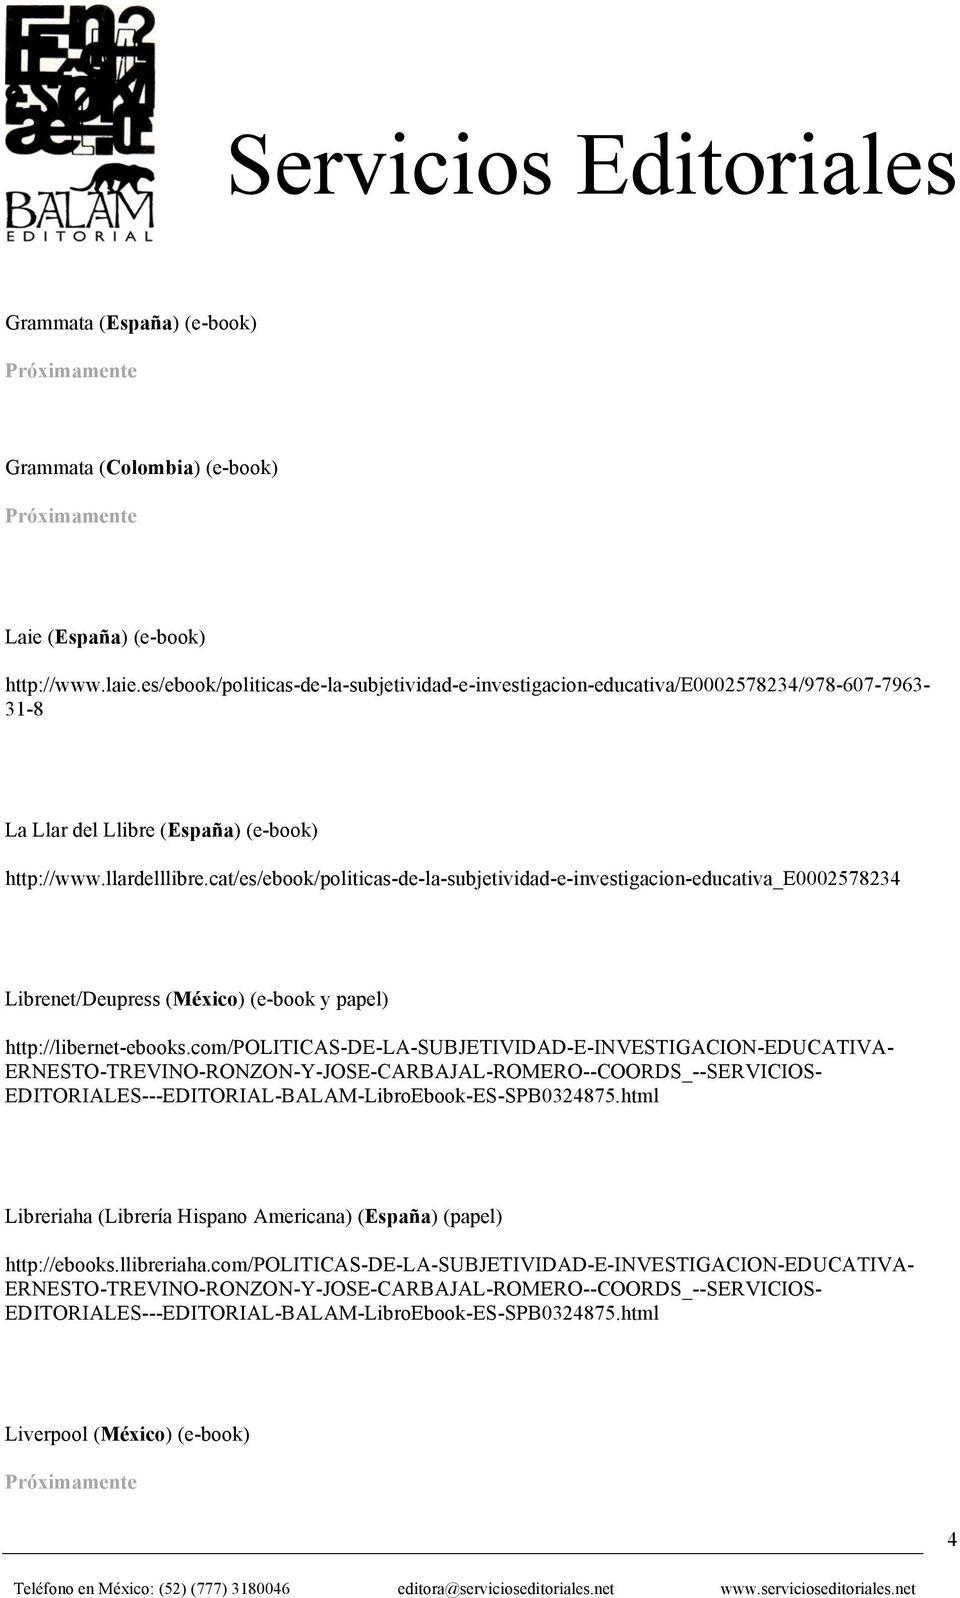 cat/es/ebook/politicas-de-la-subjetividad-e-investigacion-educativa_e0002578234 Librenet/Deupress (México) (e-book y papel) http://libernet-ebooks.